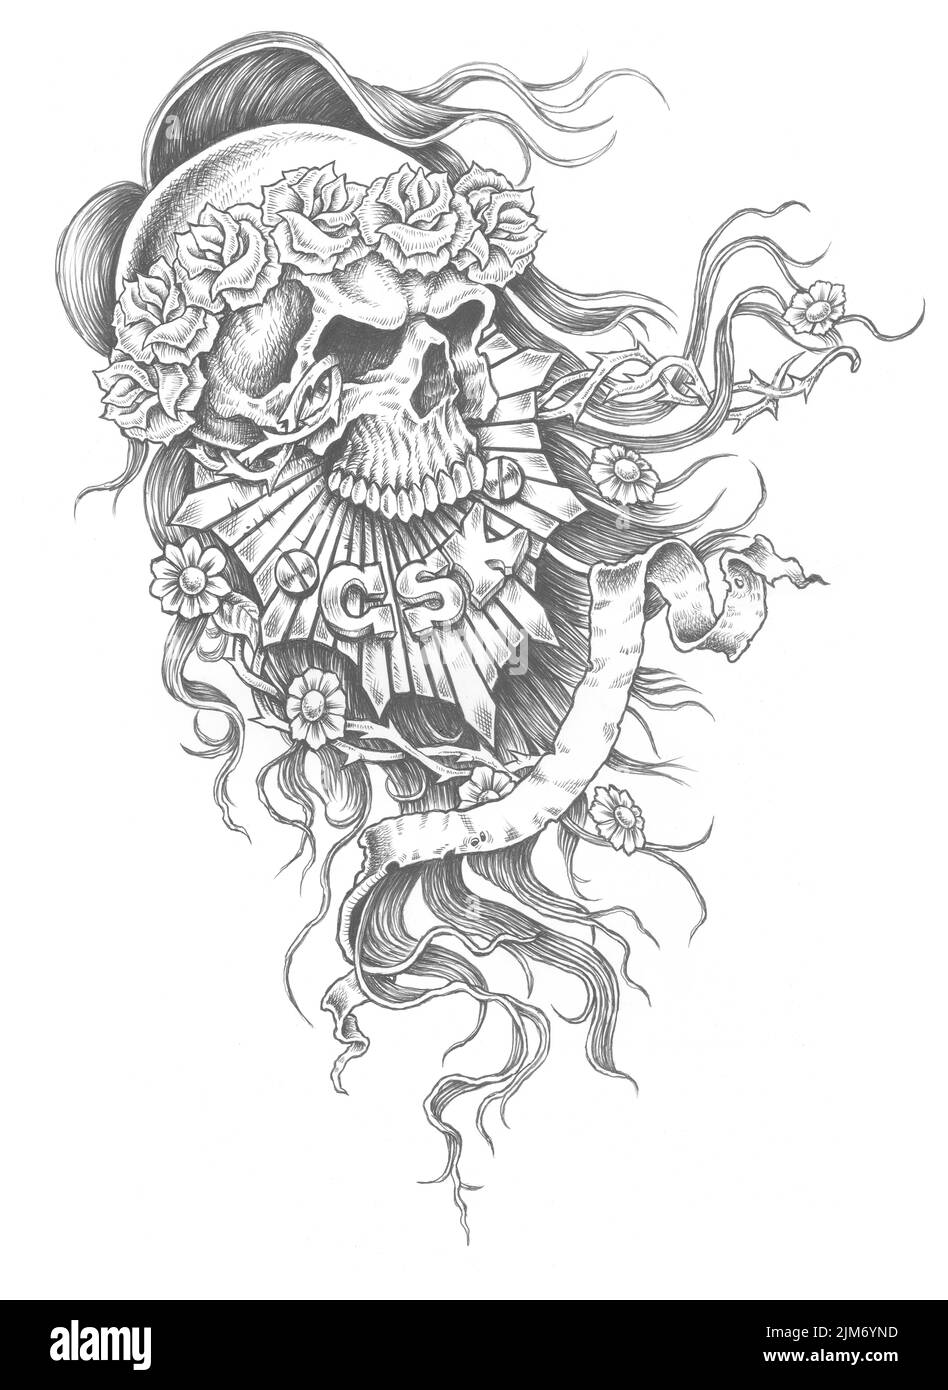 Une illustration numérique de tatouage noir blanc d'un crâne avec des détails floraux Banque D'Images